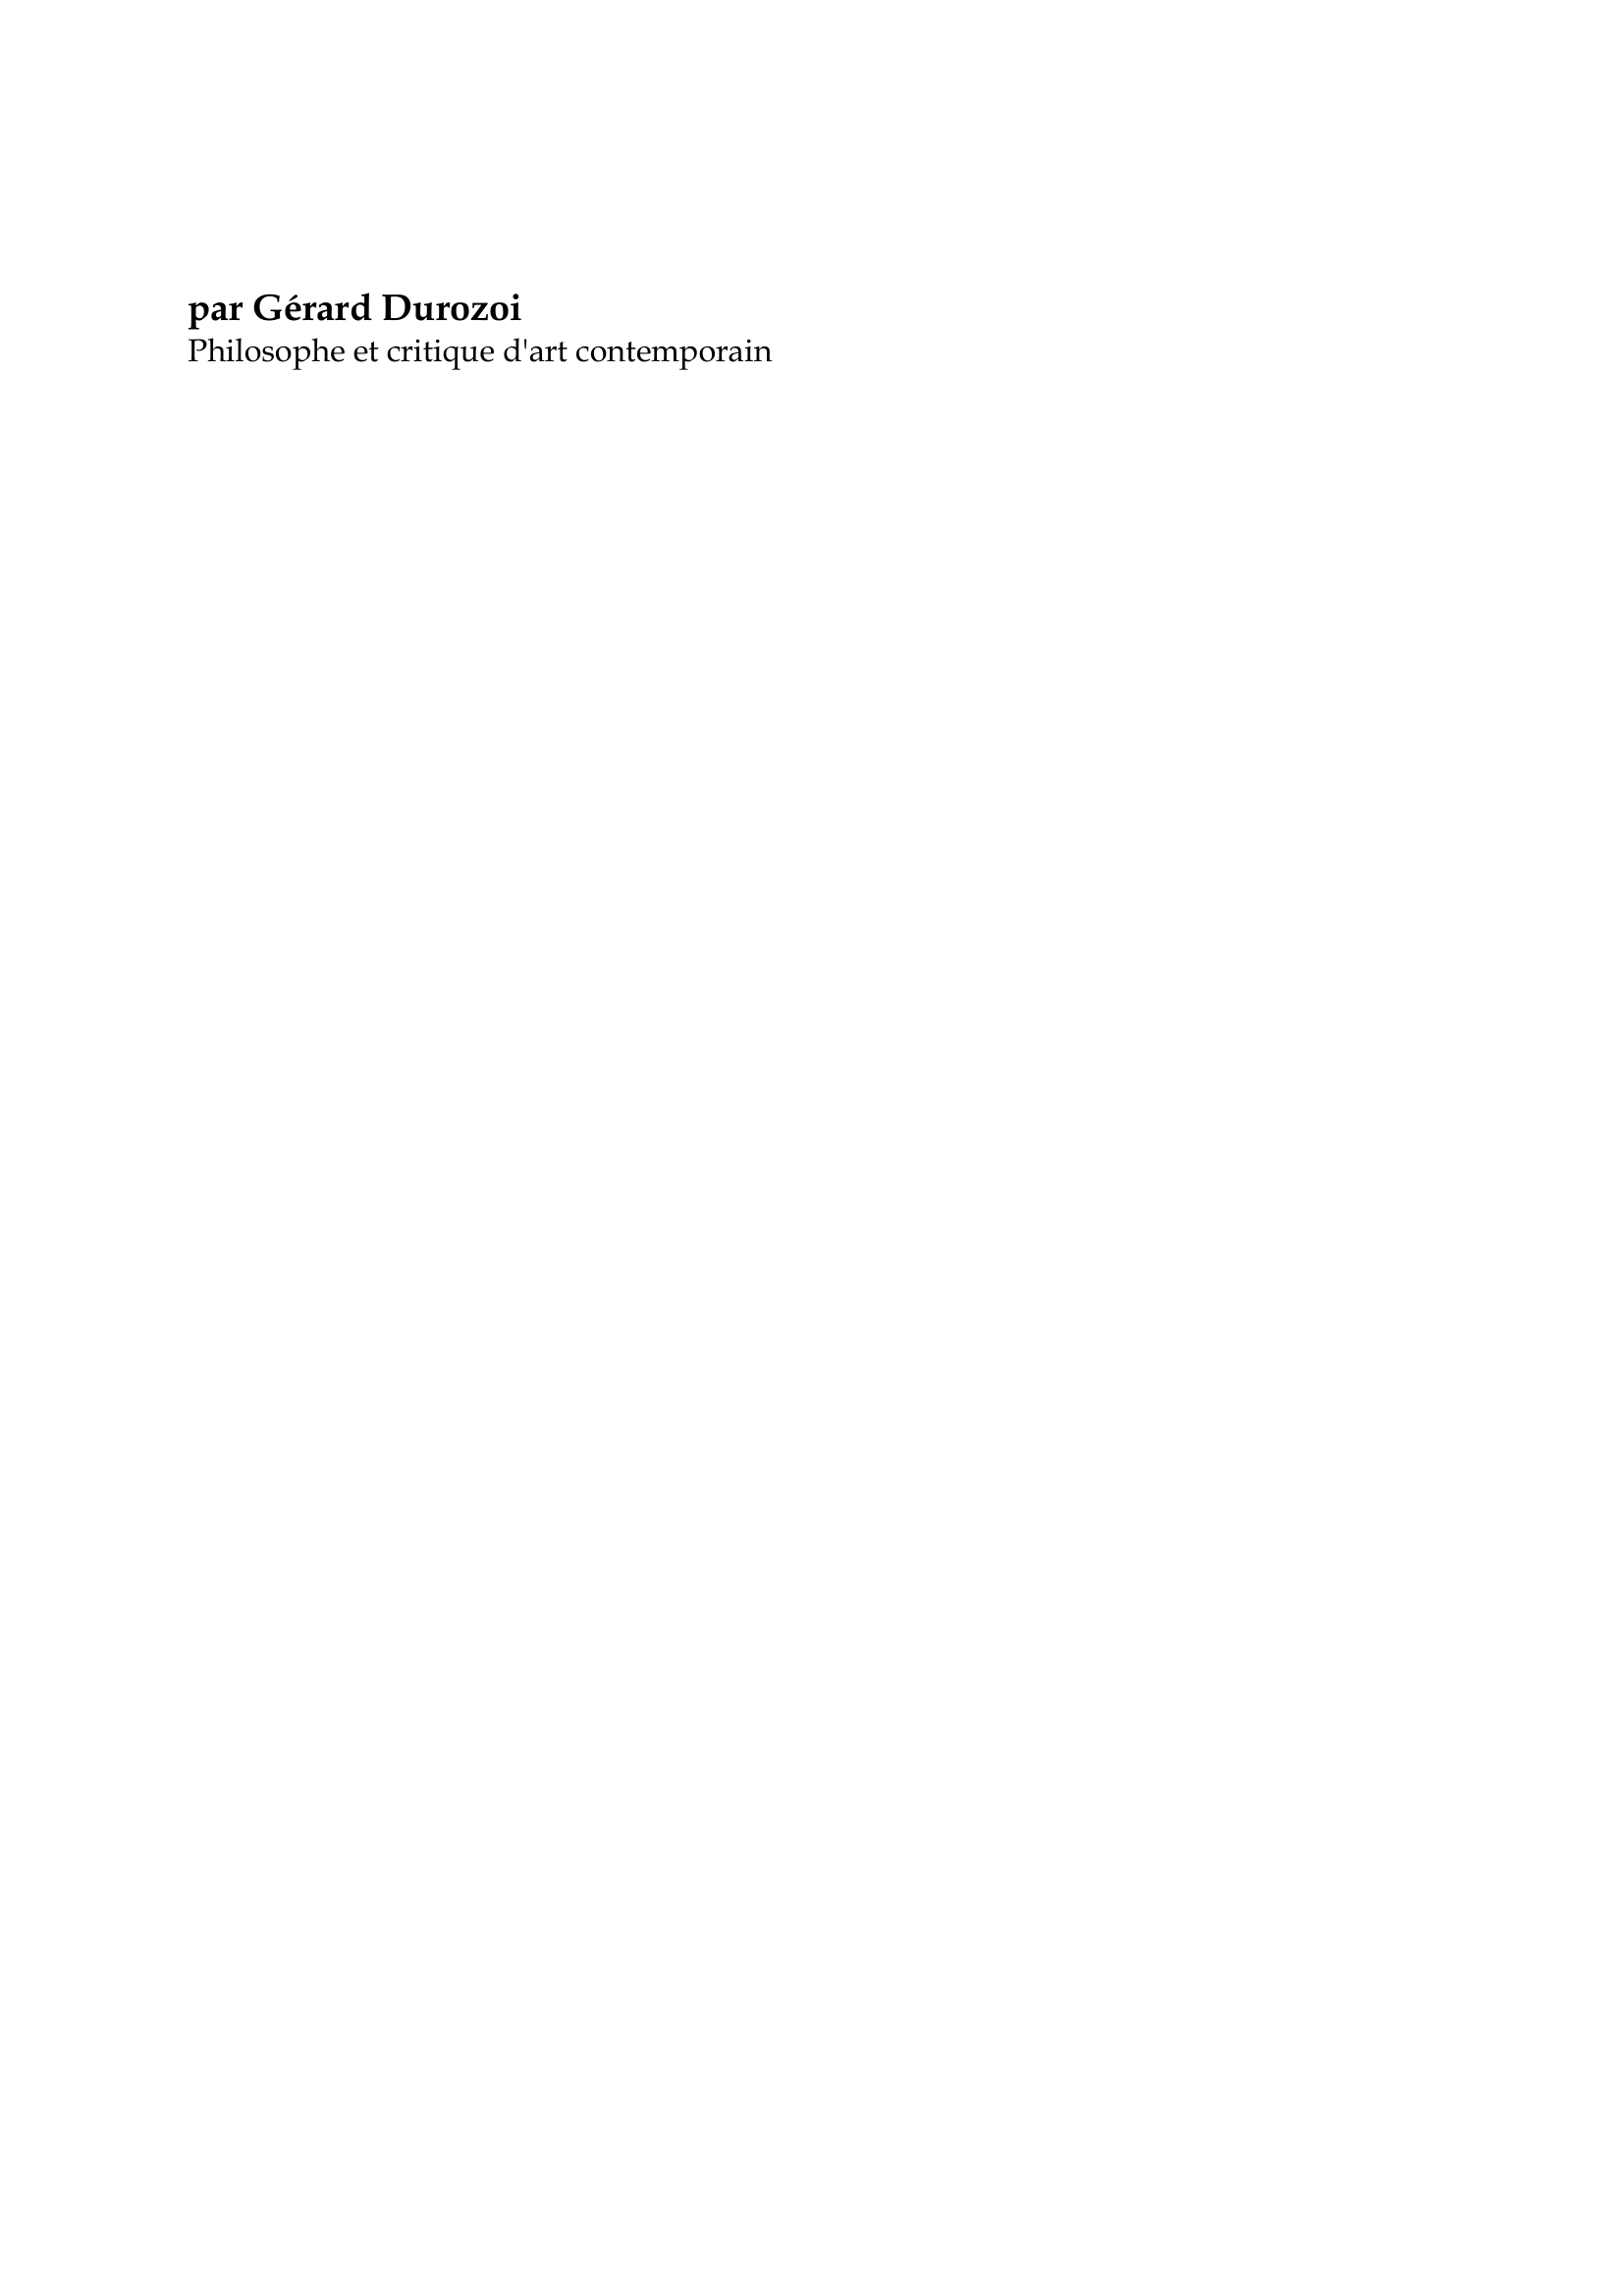 Prévisualisation du document Max Ernst

par Gérard Durozoi
Philosophe et critique d'art contemporain

Peintre d'origine allemande,